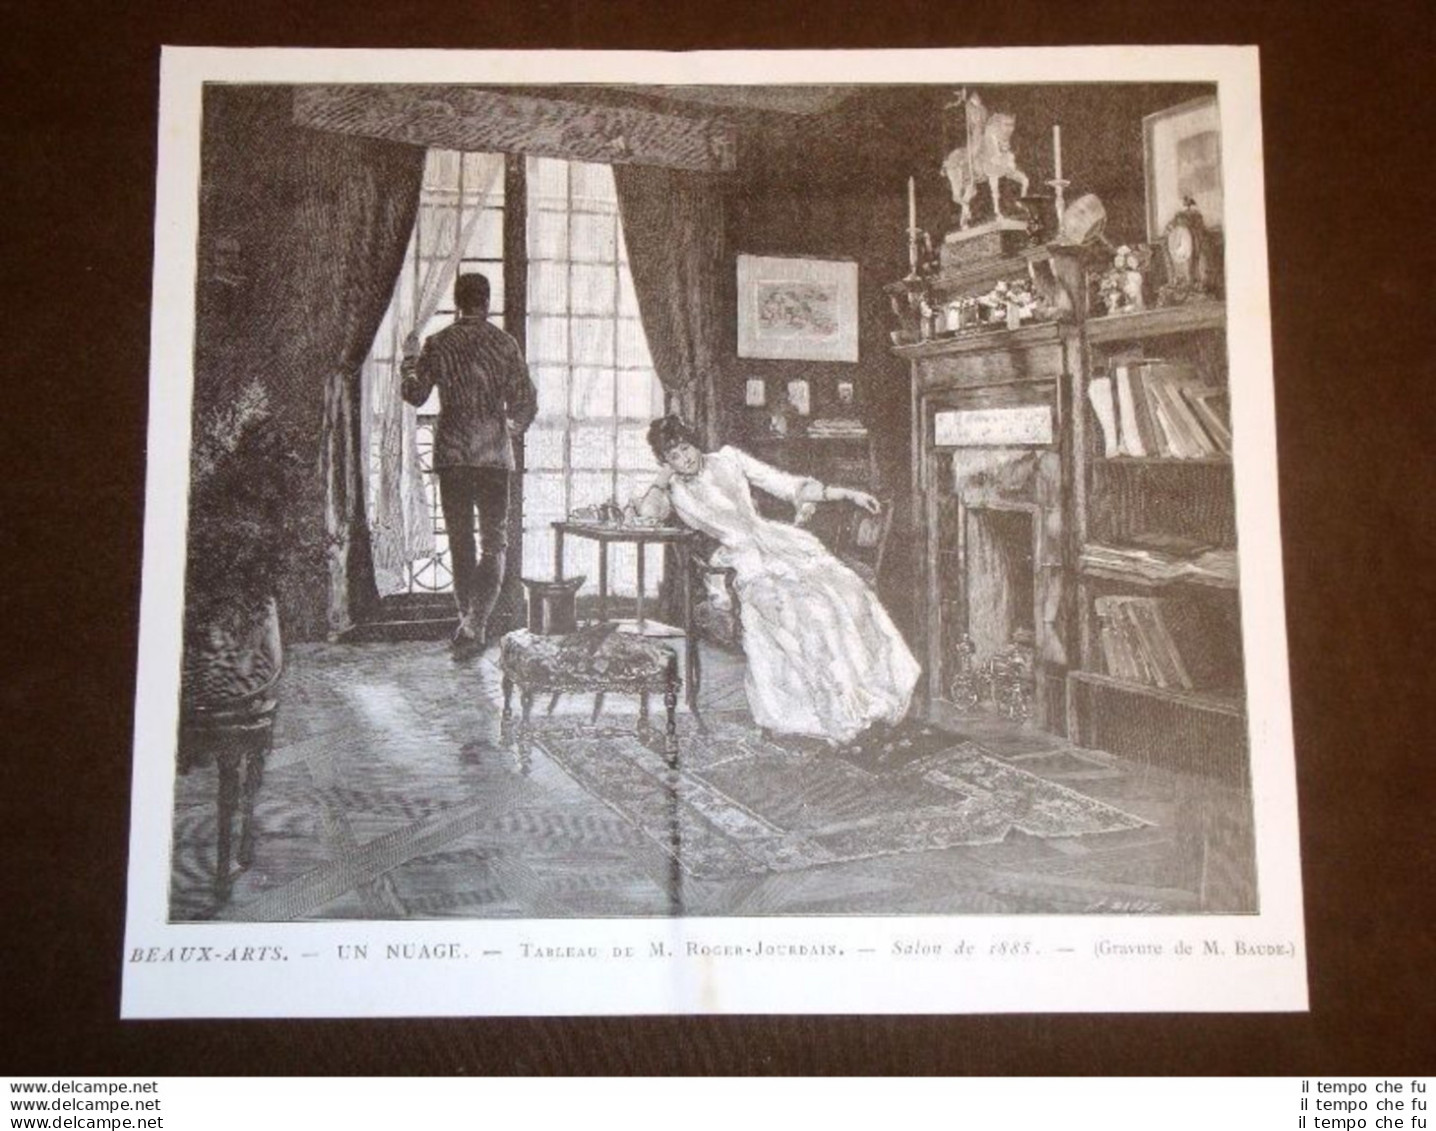 Un Nuage Tableau De M. Roger - Jourdain Salon De 1885 Gravure De M. Baude - Before 1900